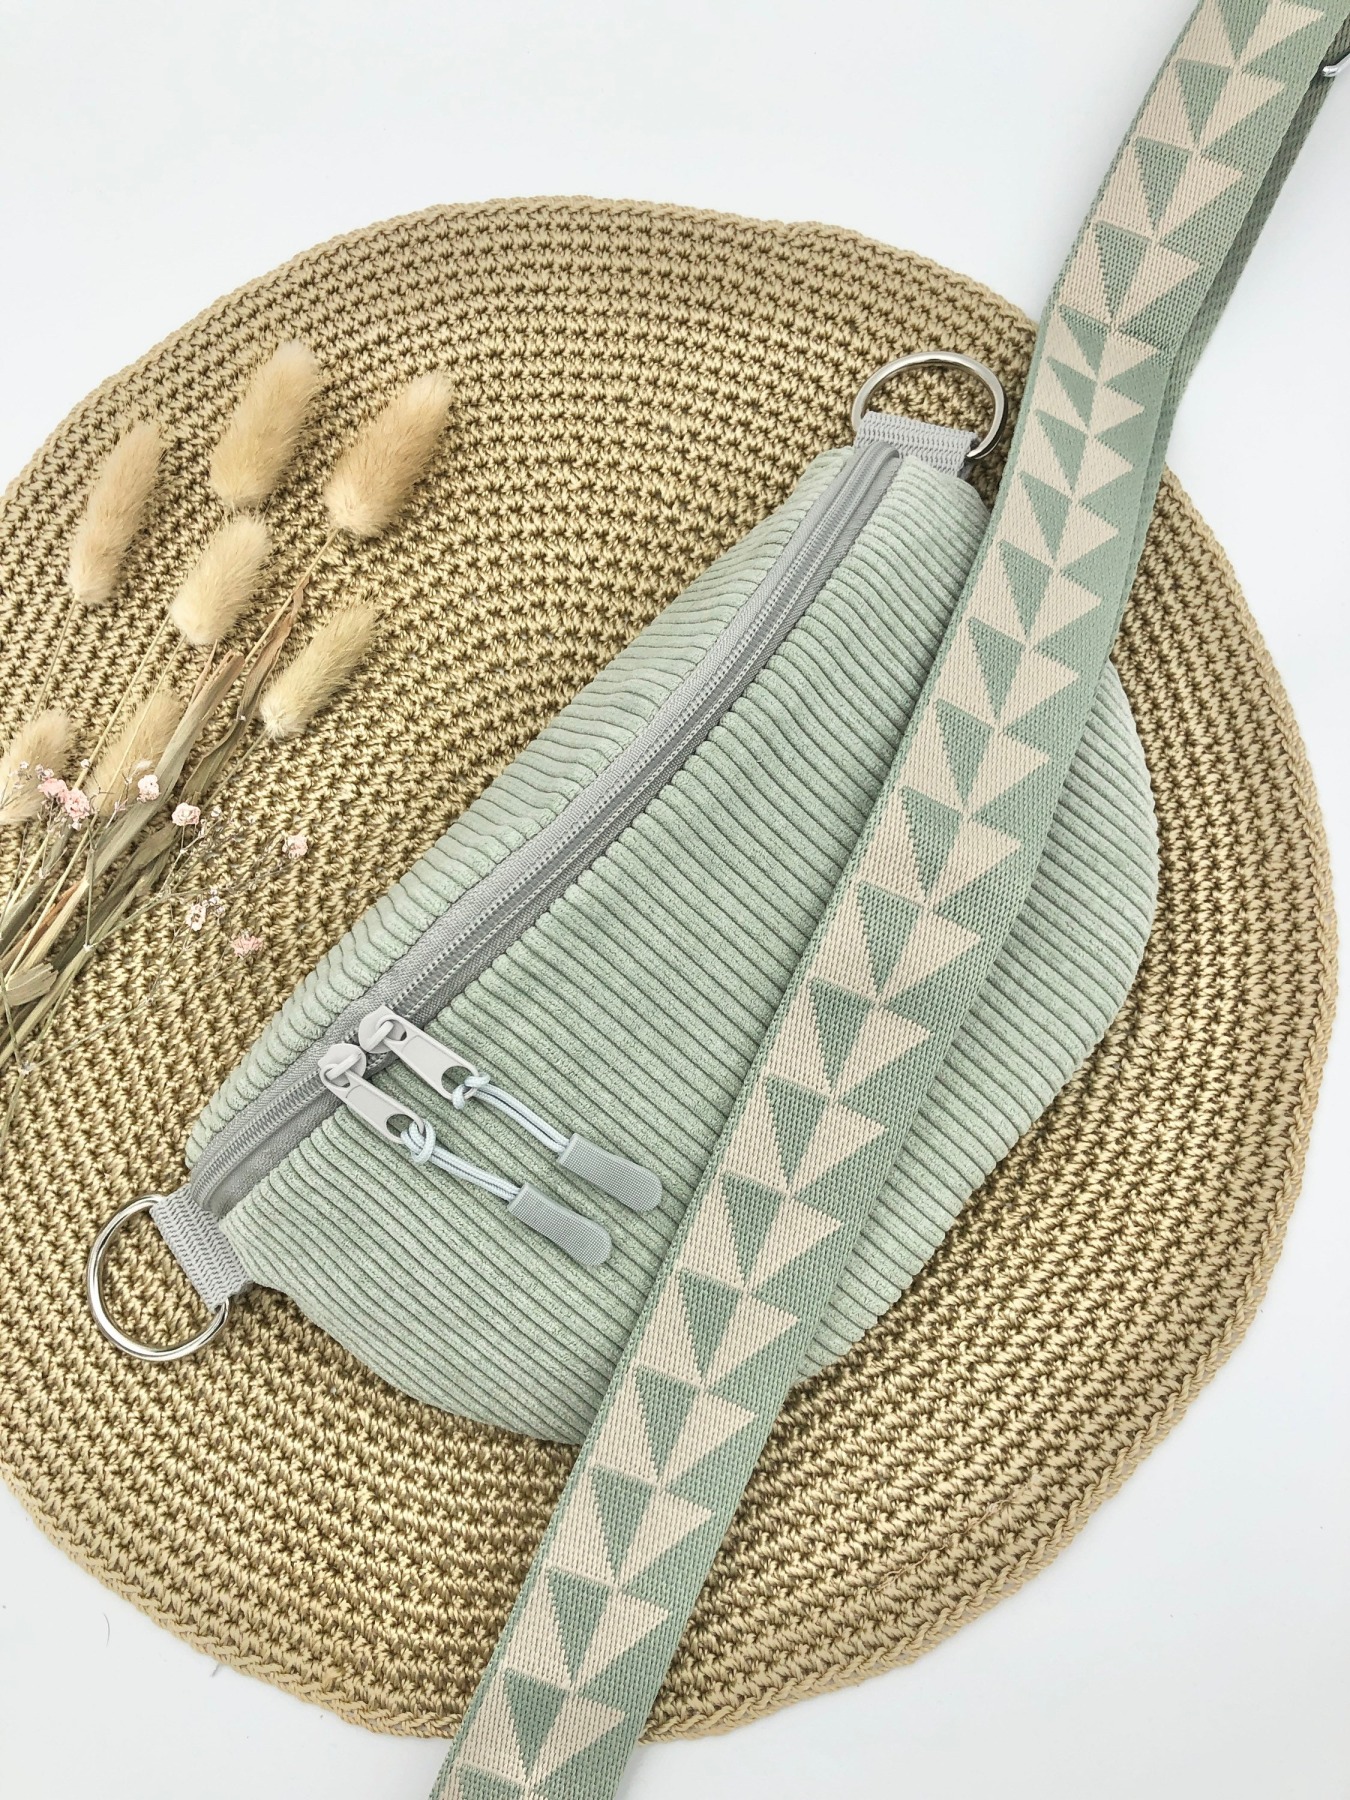 Bauchtasche Crossbag Cord salbei mit Taschengurt zartes grün Hipbag leicht und praktisch Kord